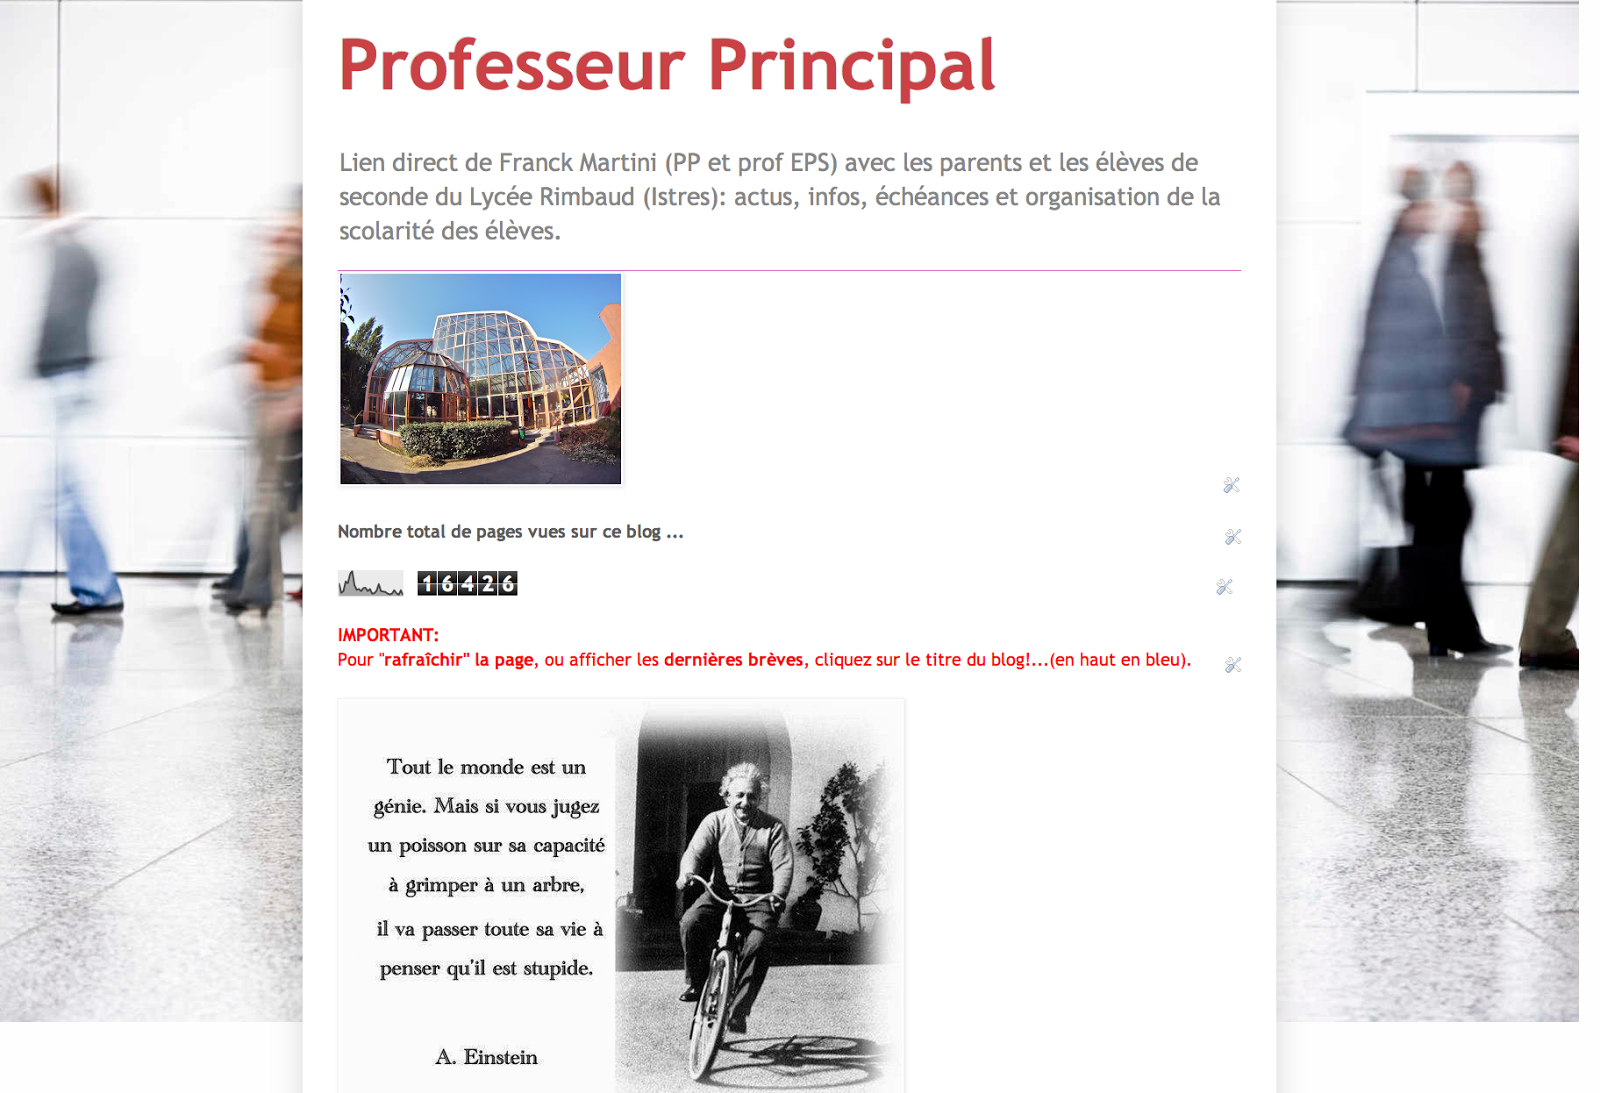 Le Blog Prof Principal de Franck Martini